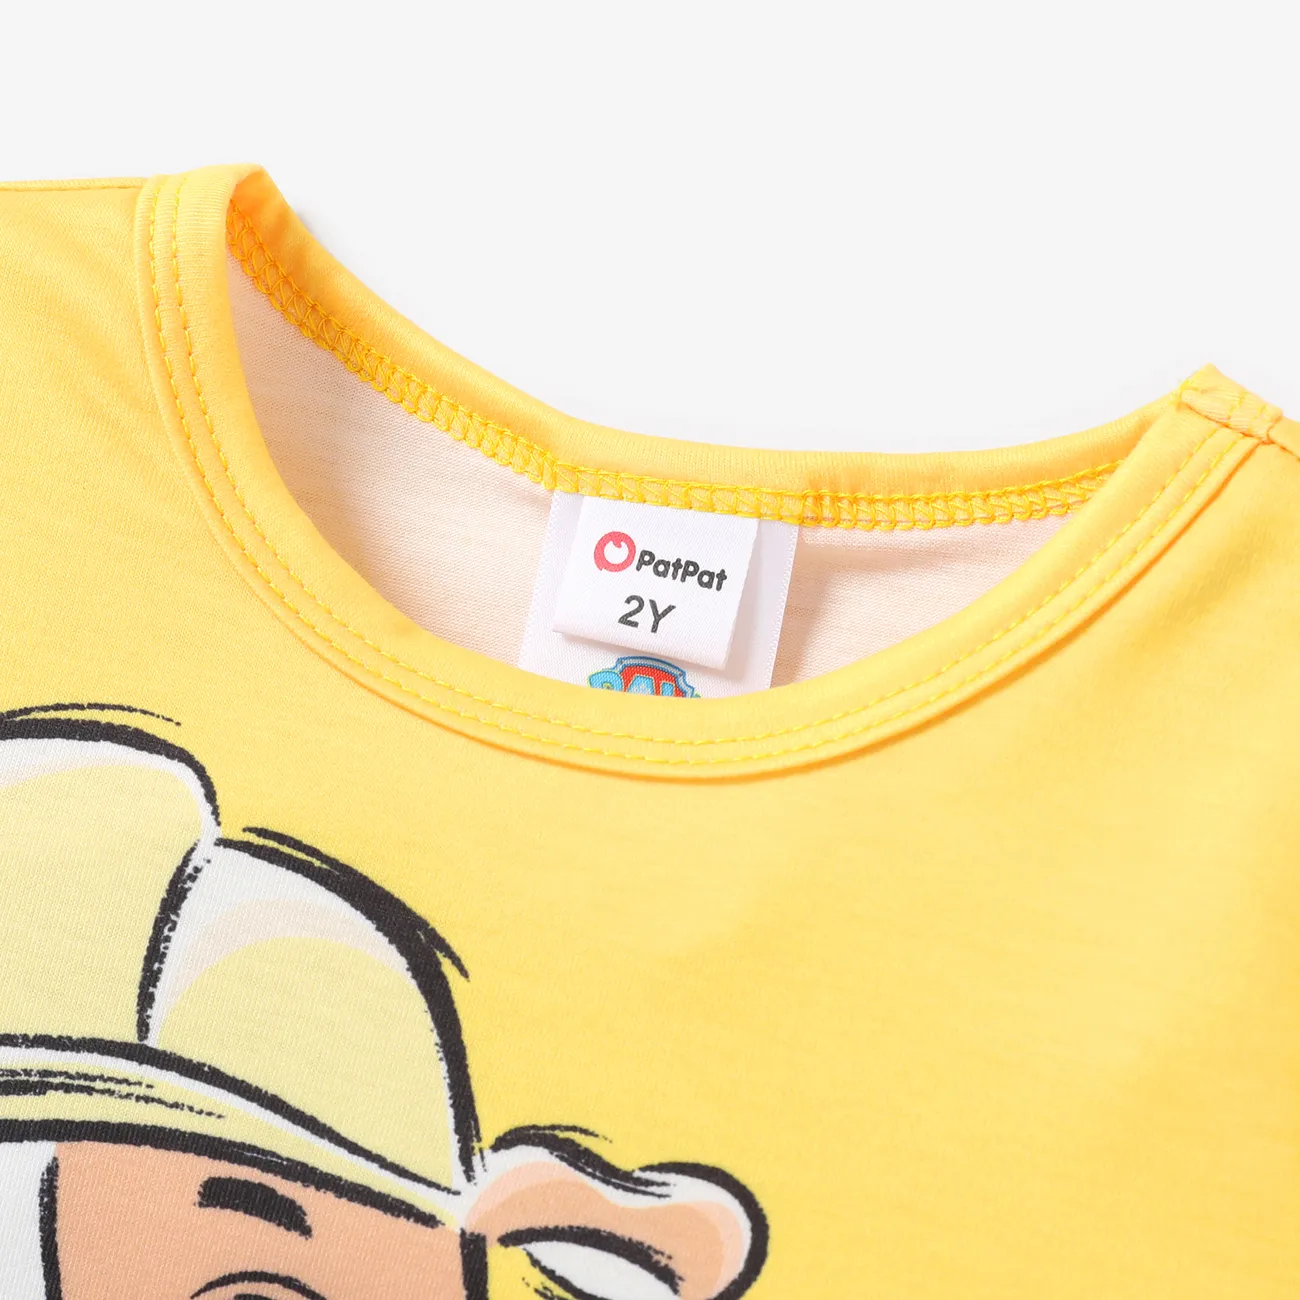 Patrulha Canina Unissexo Infantil T-shirts Amarelo big image 1